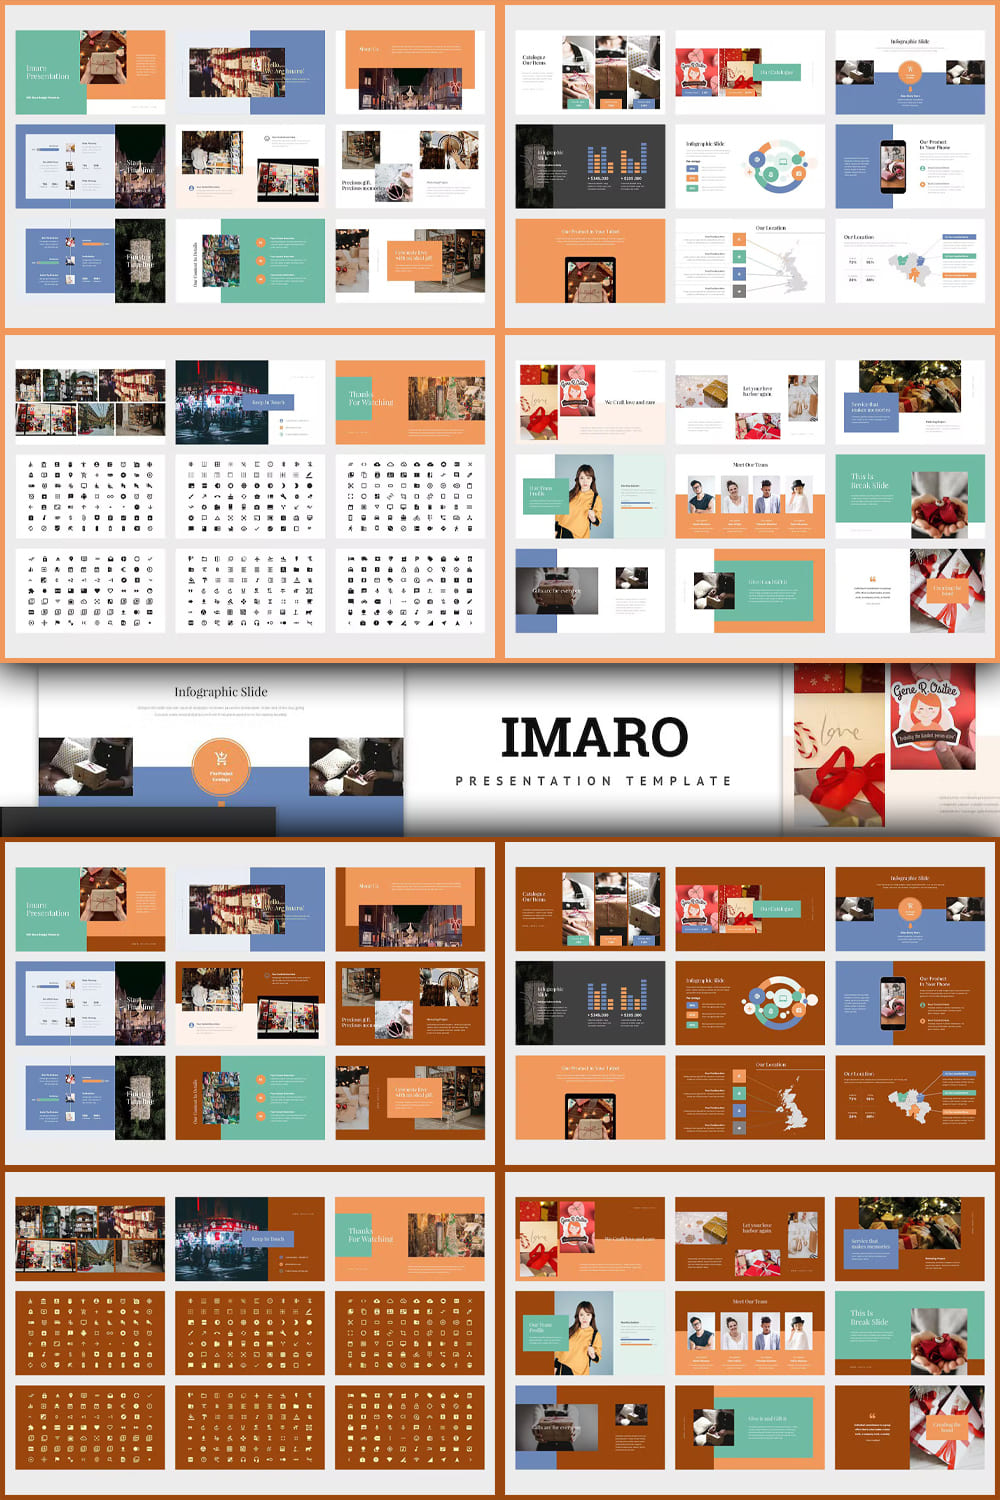 Imaro: Powerpointing Gift Box - Pinterest.